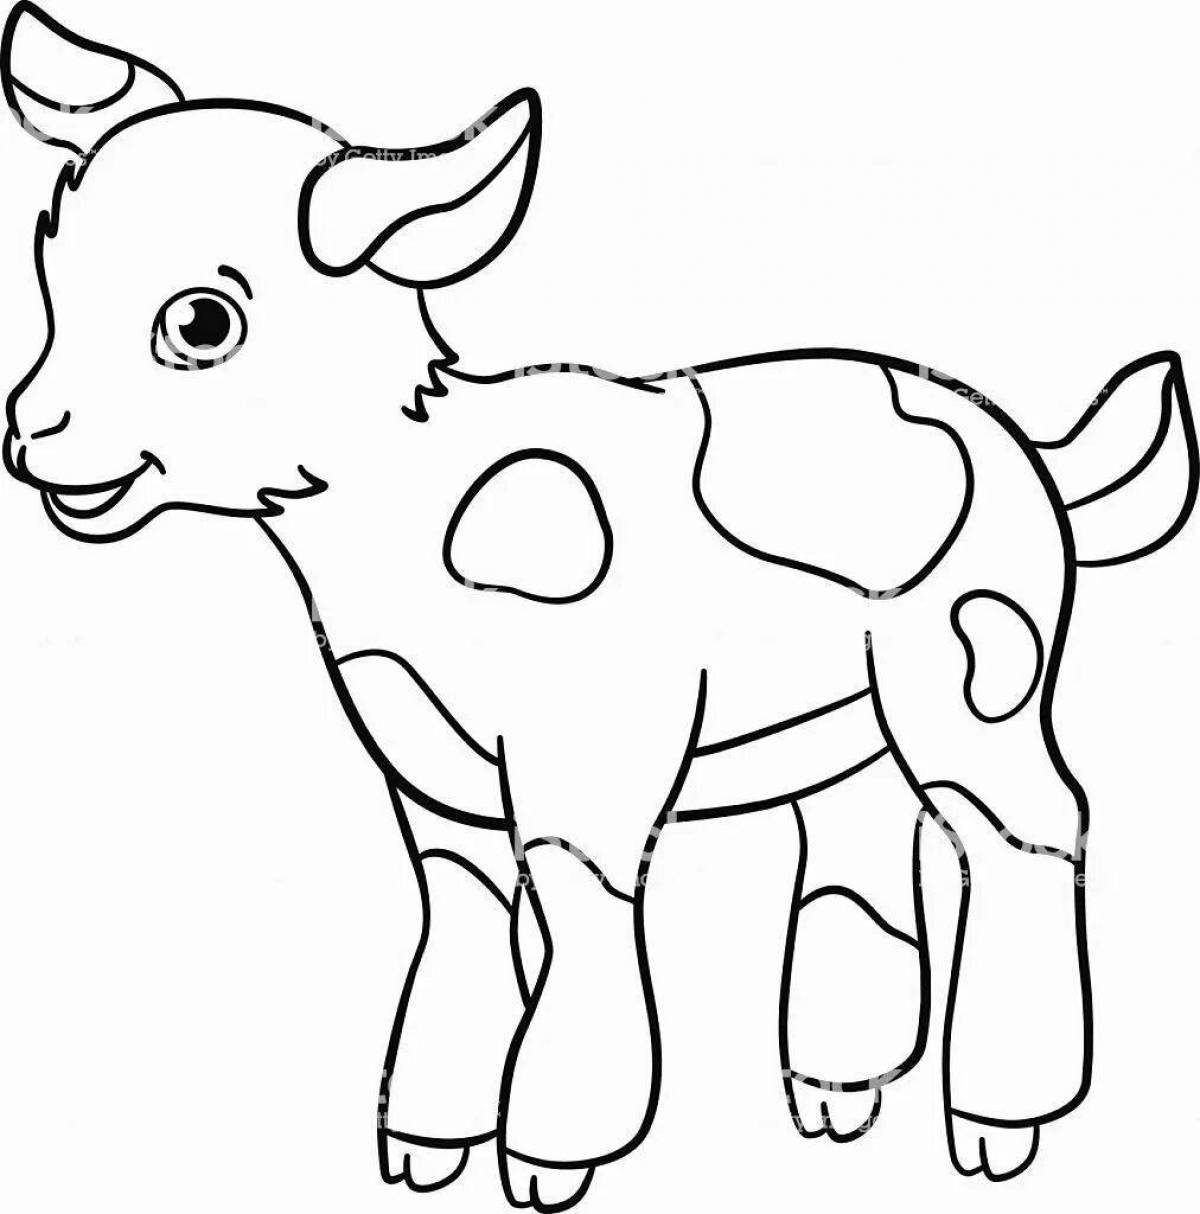 Фото Яркая раскраска козла для детей